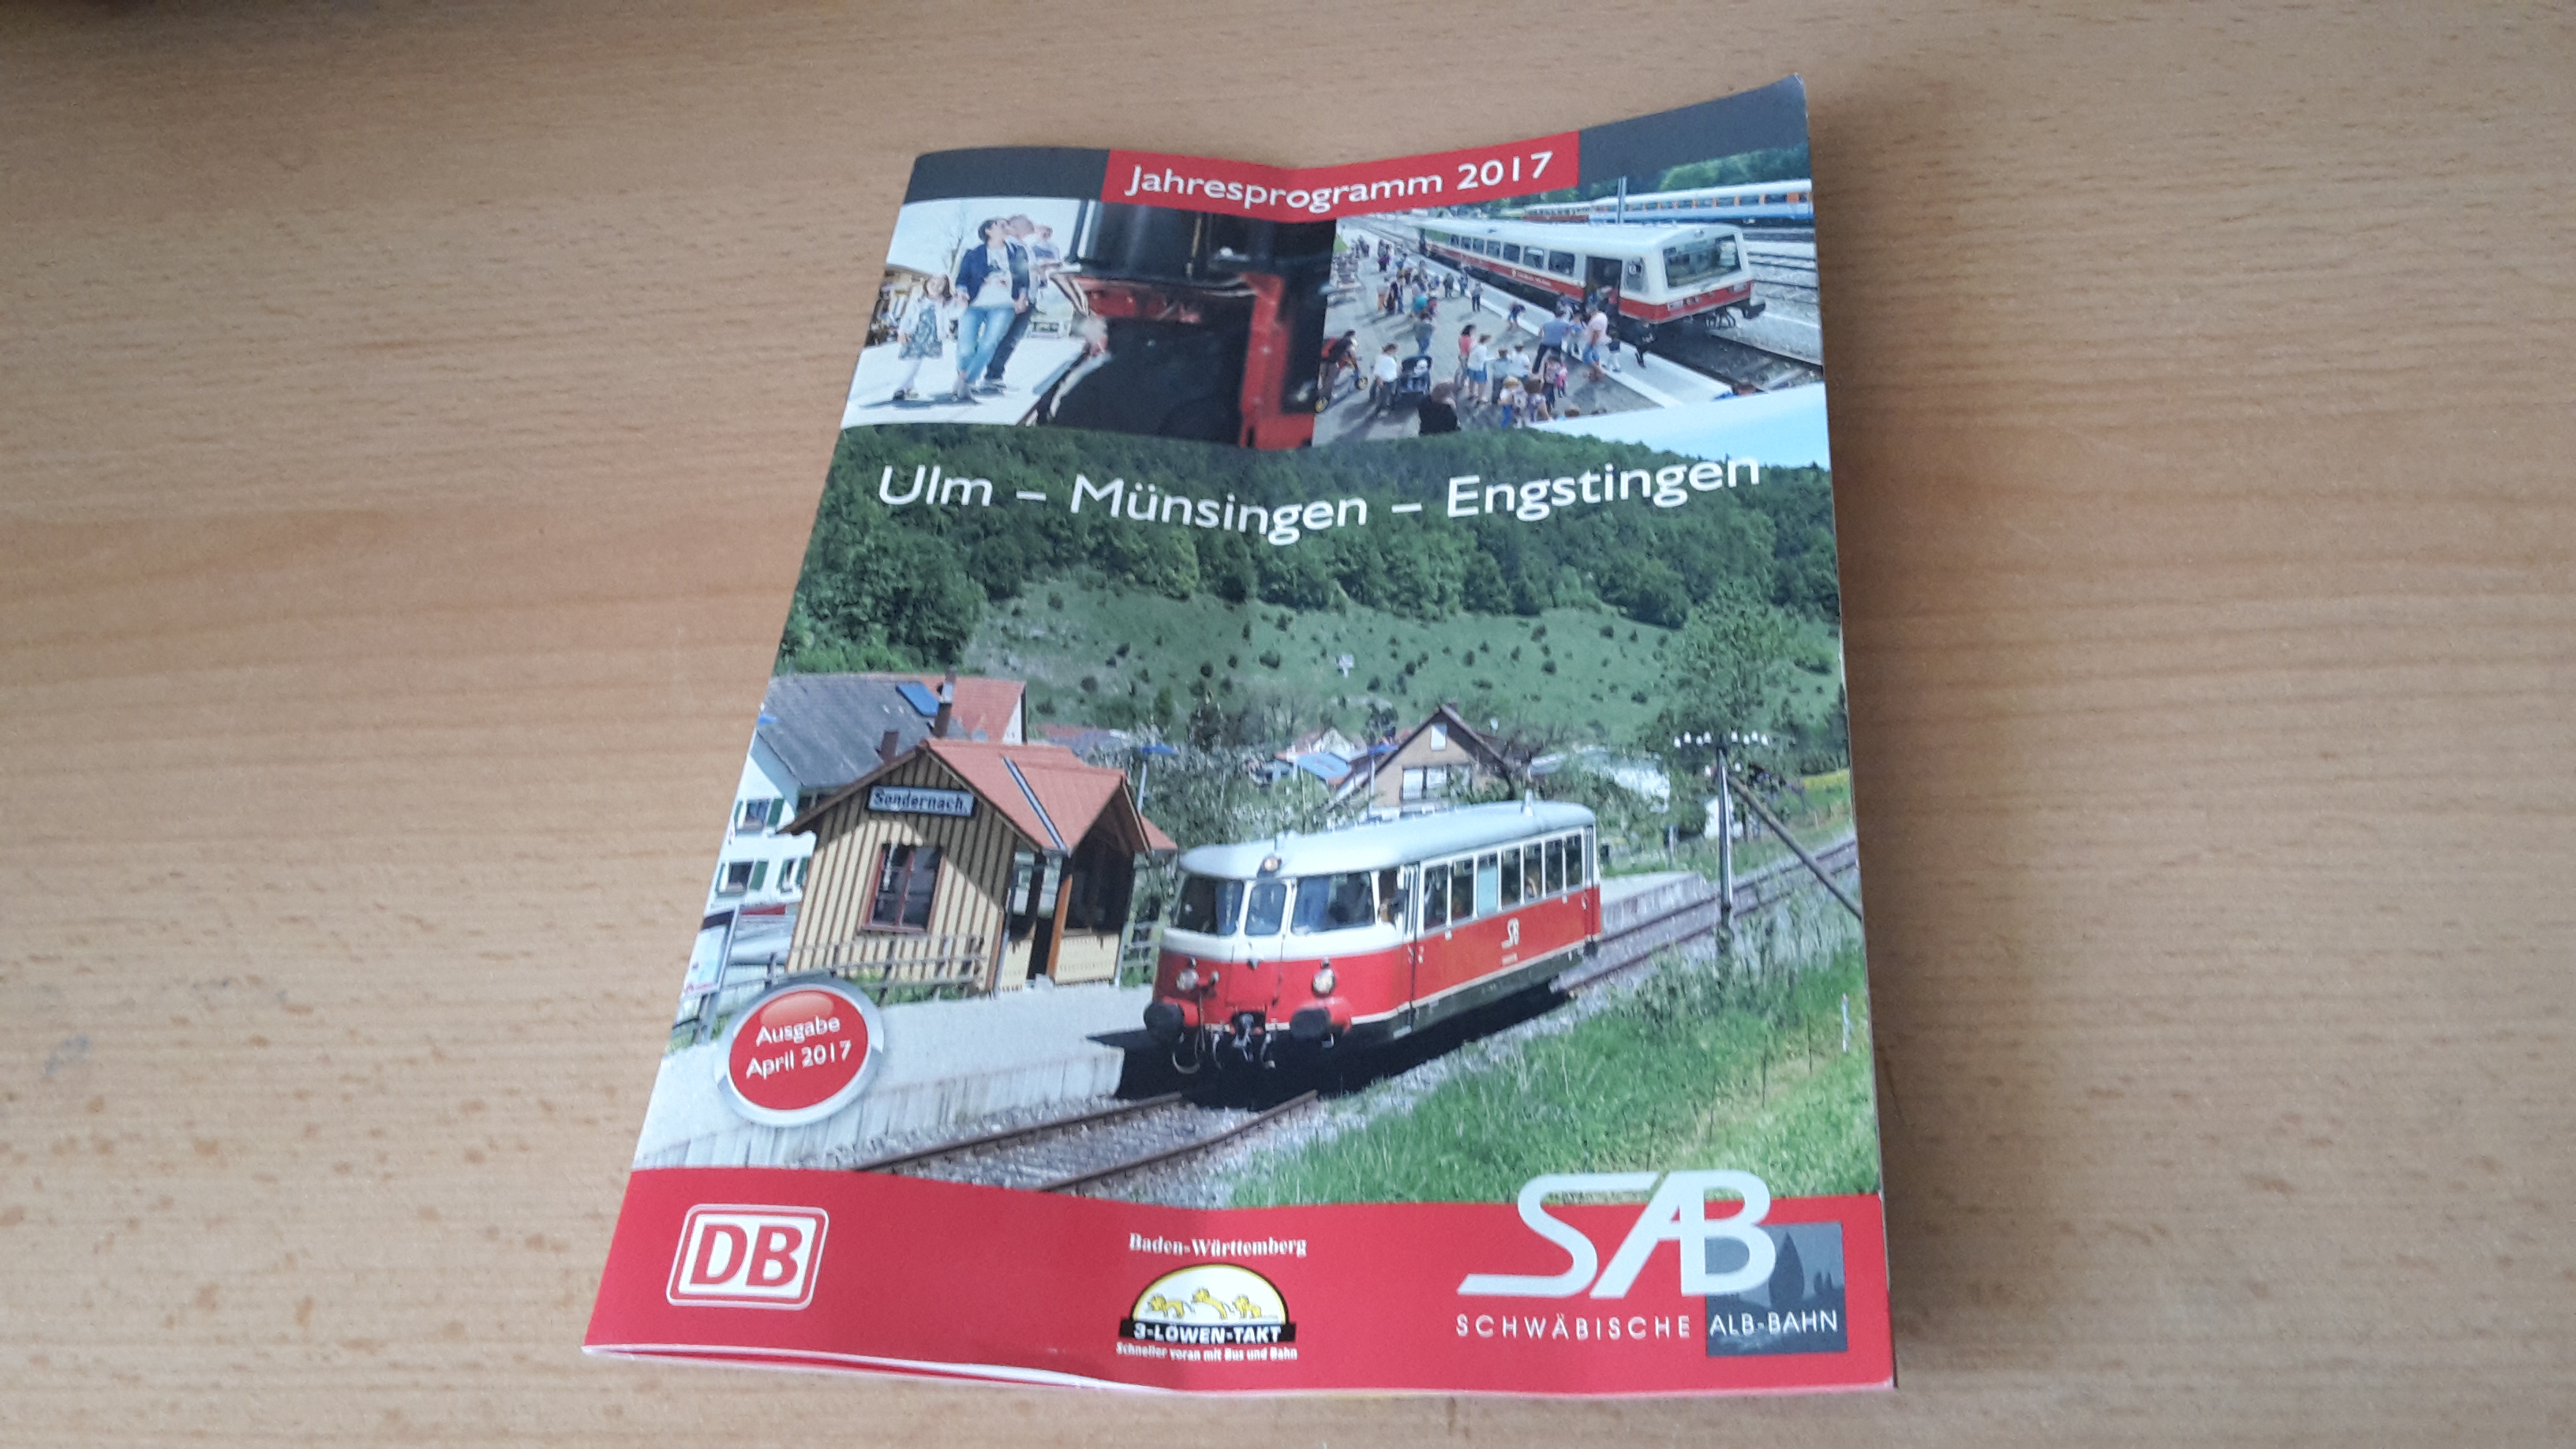 Das Jahresprogramm 2017 der Schw&auml;bischen Alb-Bahn (SAB).